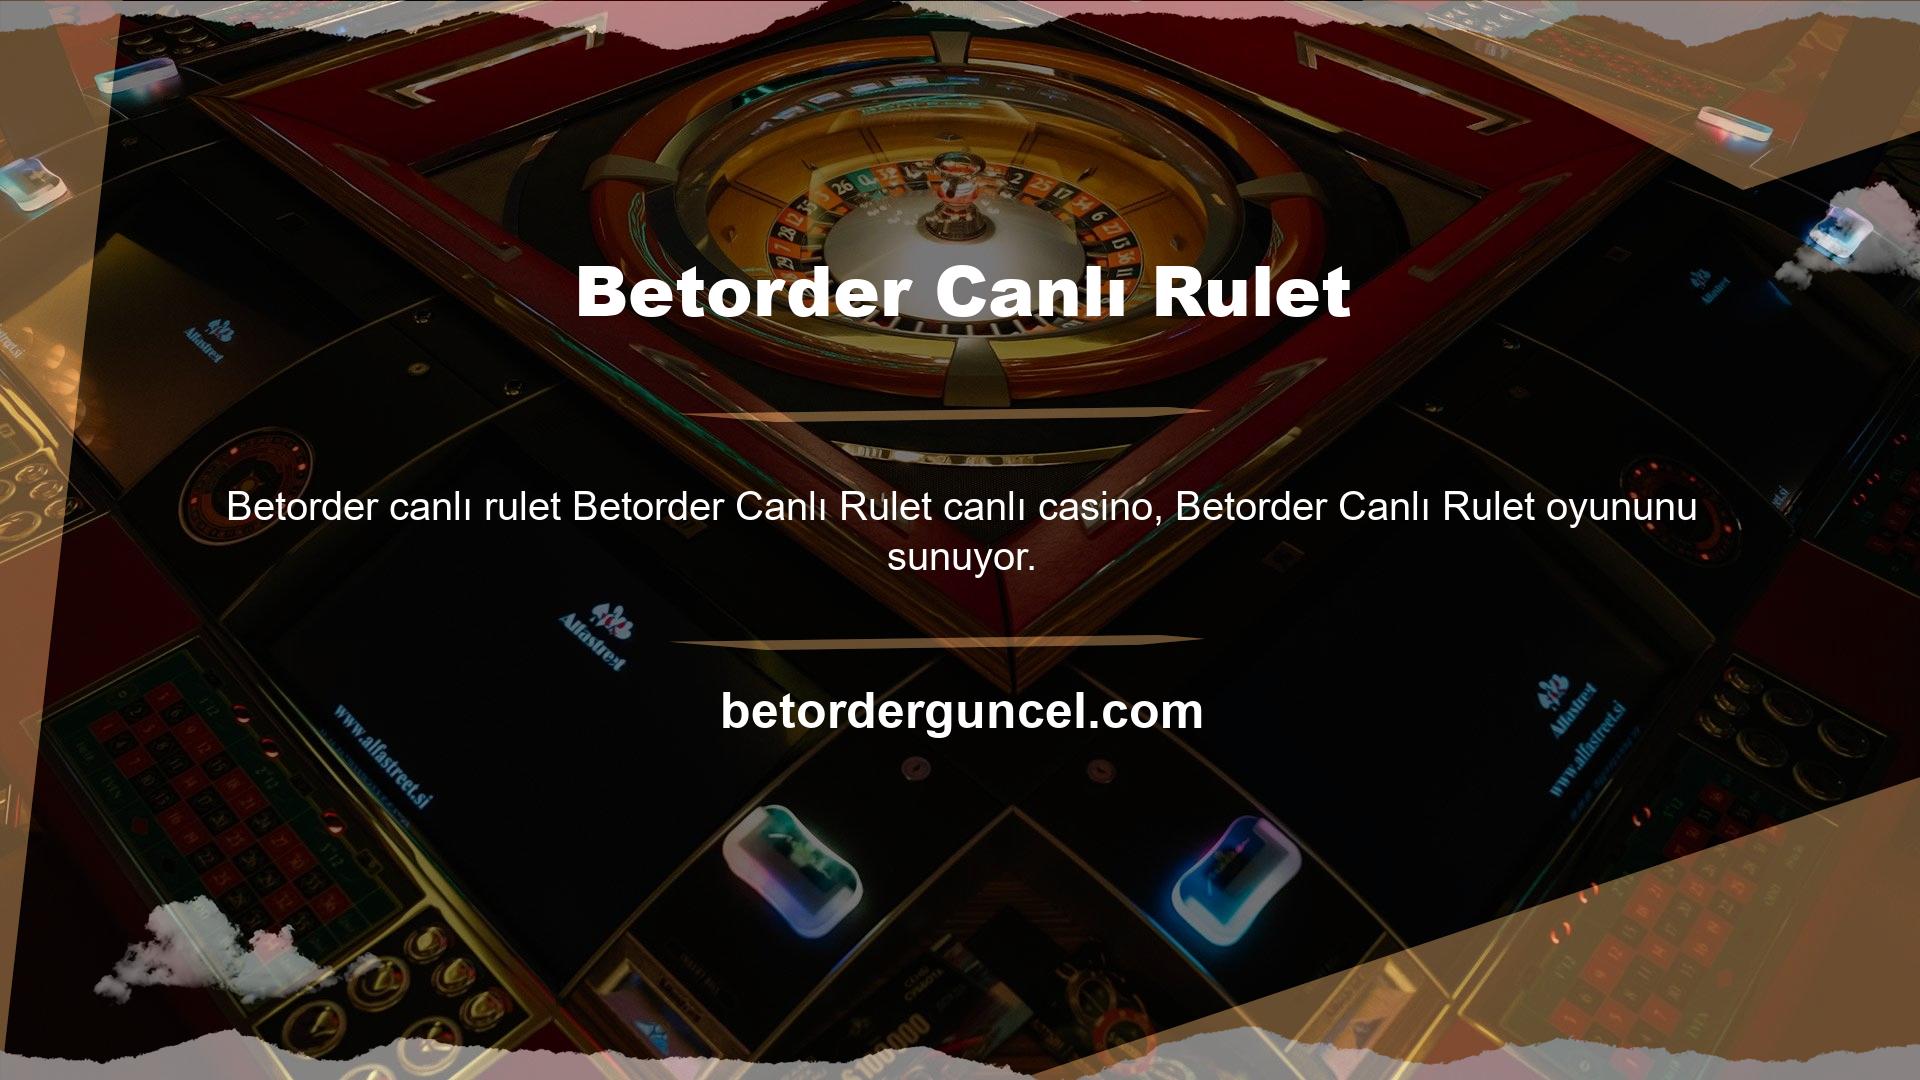 Böyle bir platformda rulet oynamanın canlı casino dünyasına adım atmak anlamına geldiğini zaten biliyorsunuz